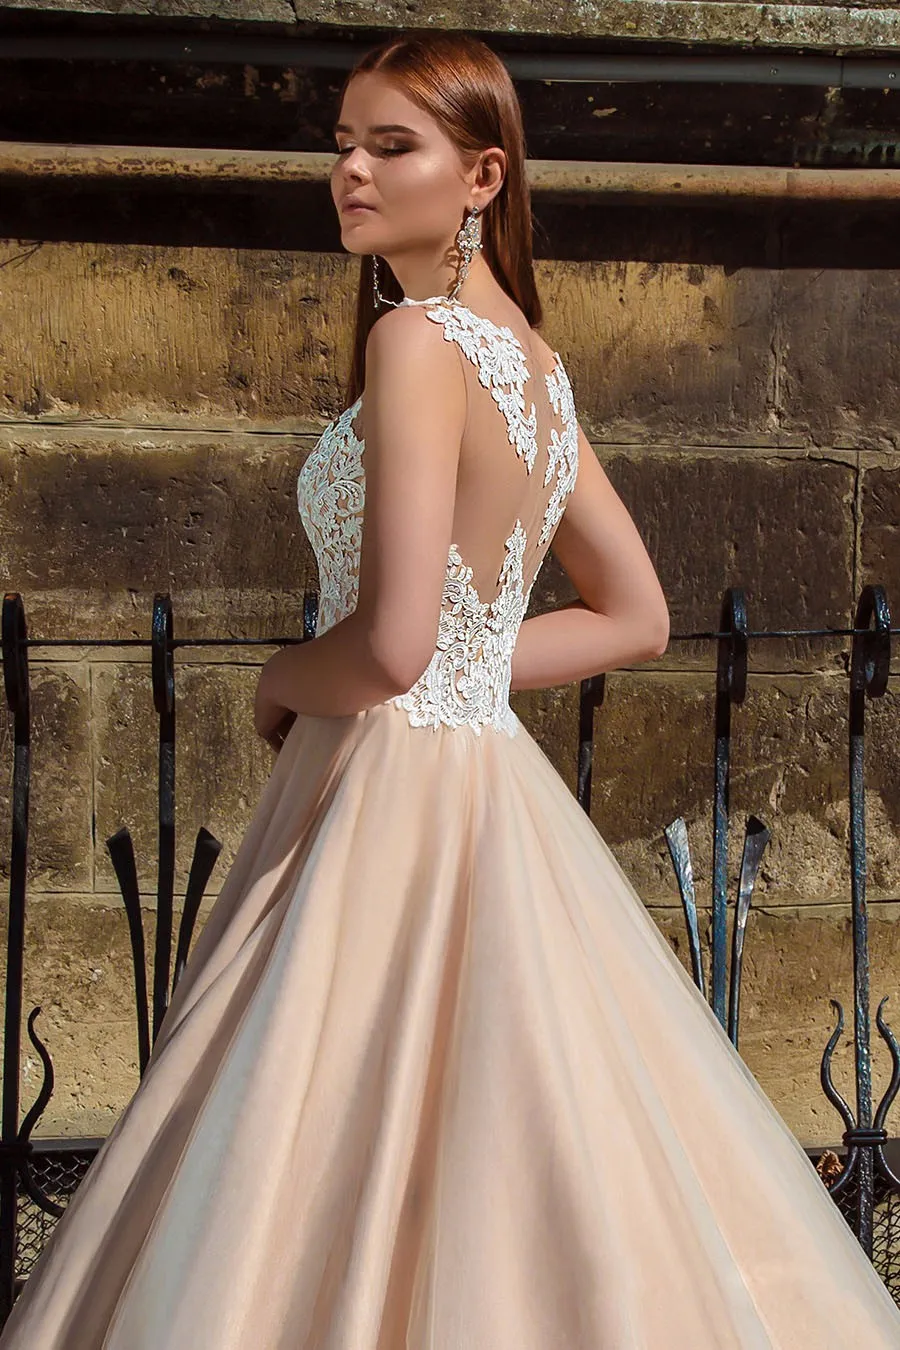 Vintage Lace Champagne Wedding Dress with Color Appliques Lace Floor-Length Tulle Online Shop Bridal Gowns Vestido De Noiva